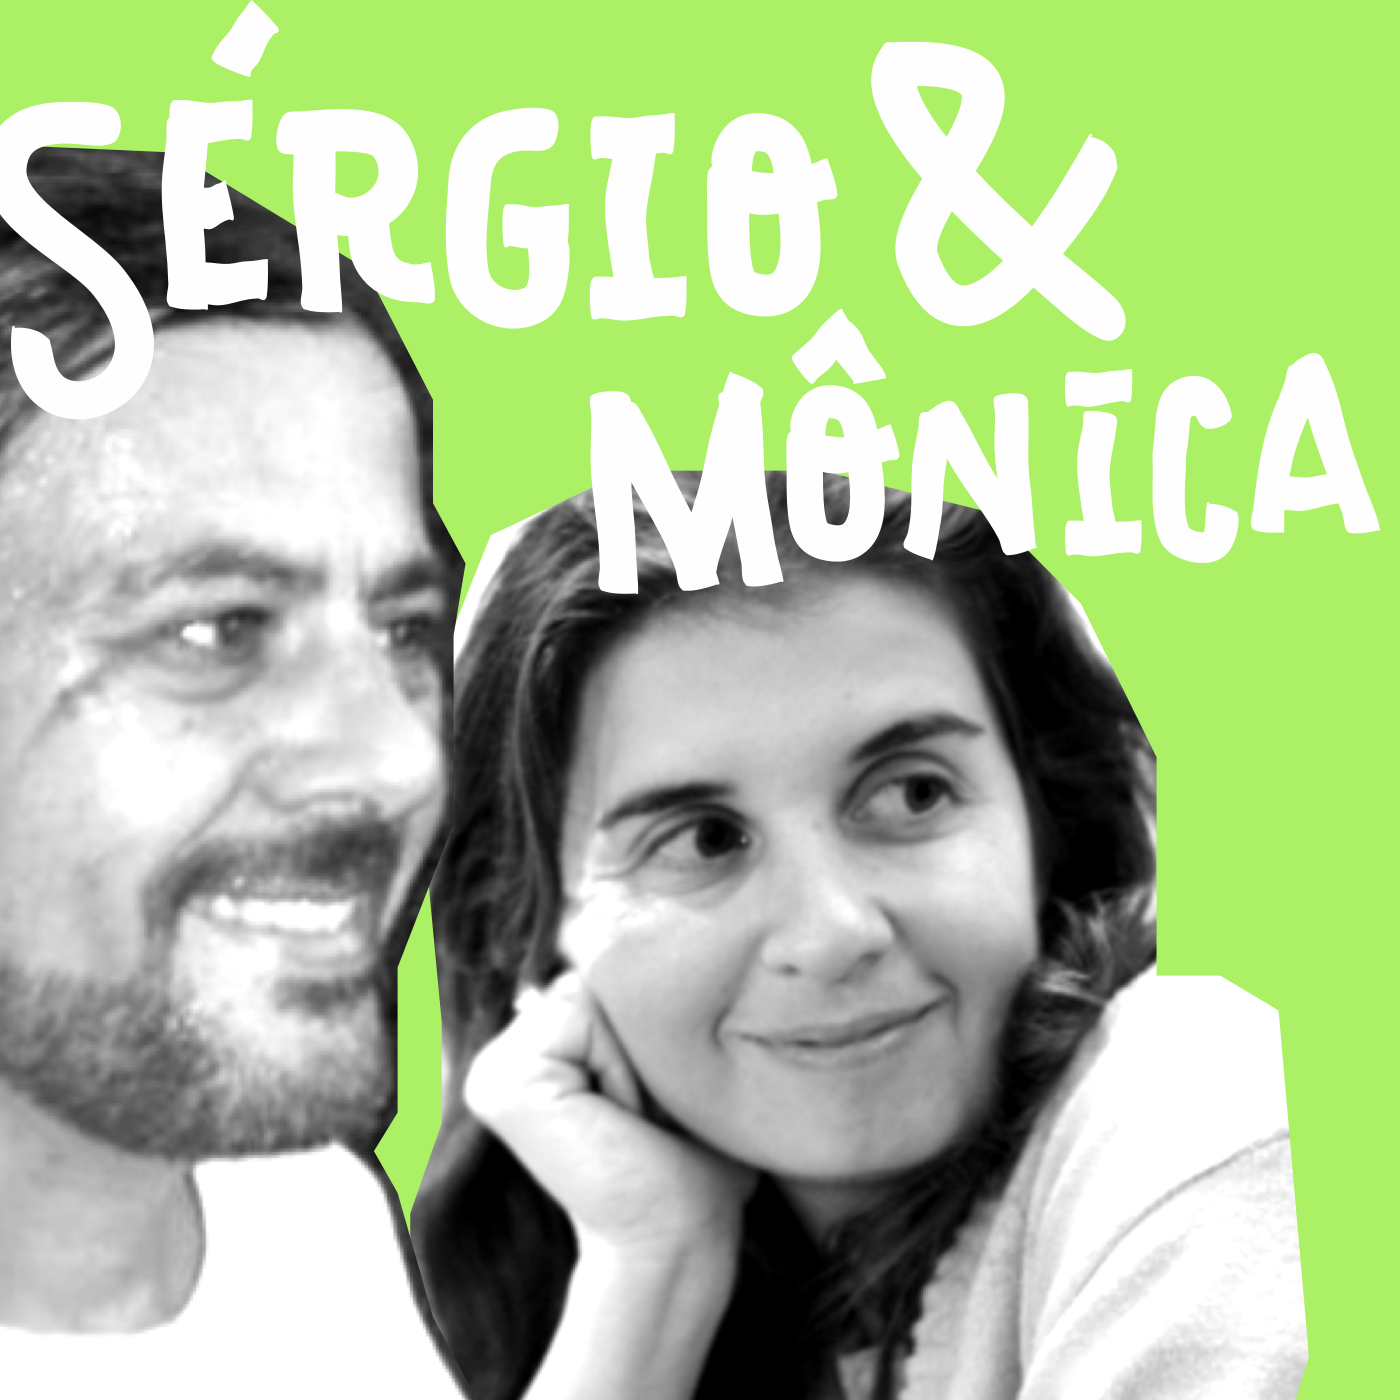 Sustentabilidade na Teia com Sérgio Pamplona e Mônica Carapeços